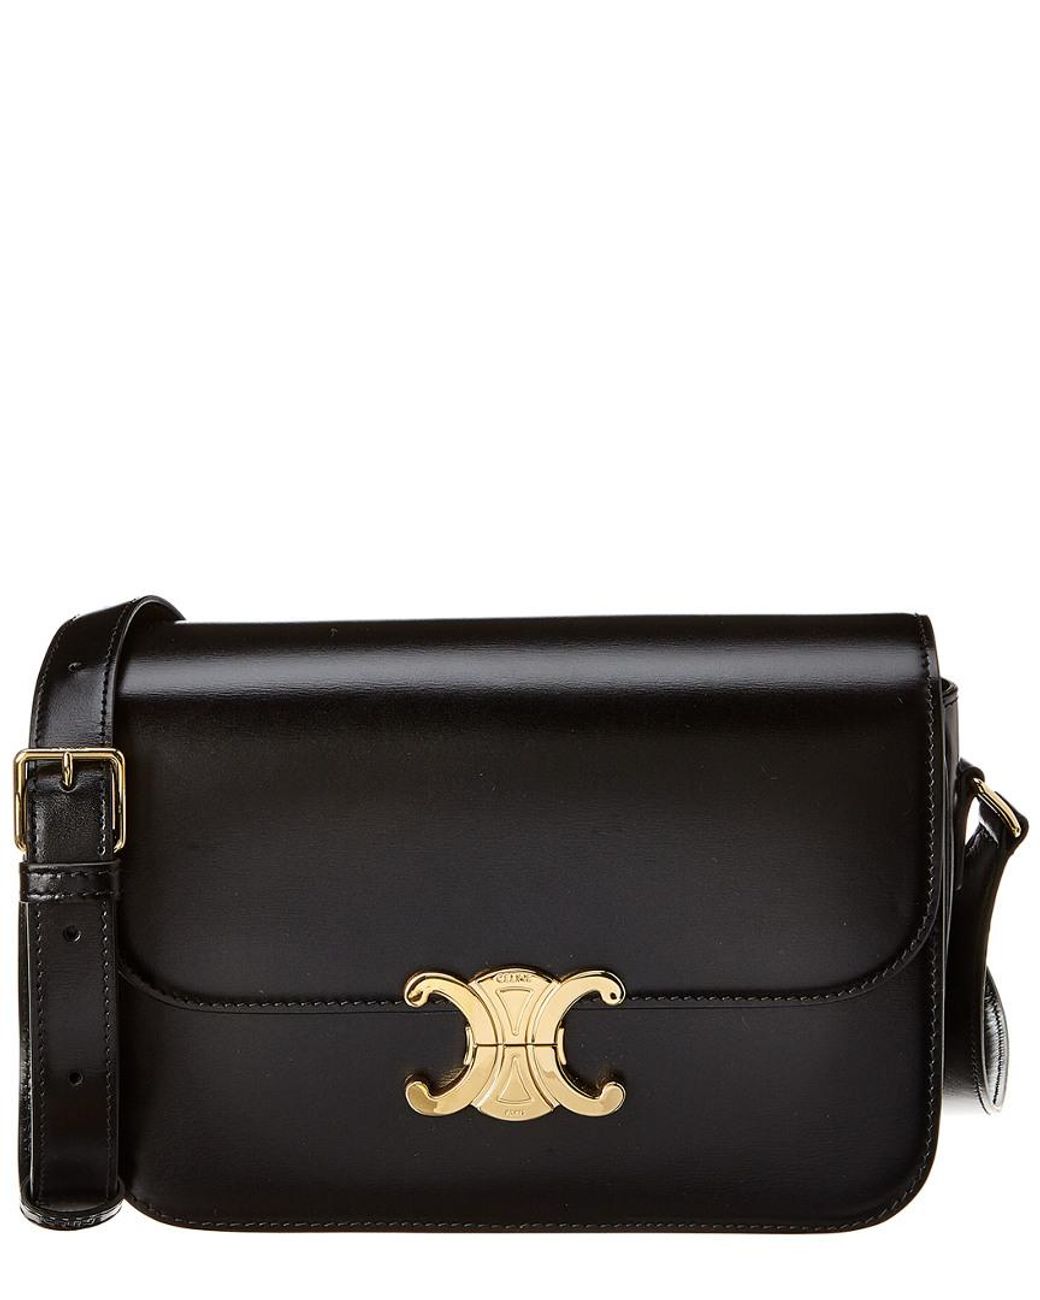 Celine Medium Triomphe Leather Shoulder Bag in Black | Lyst